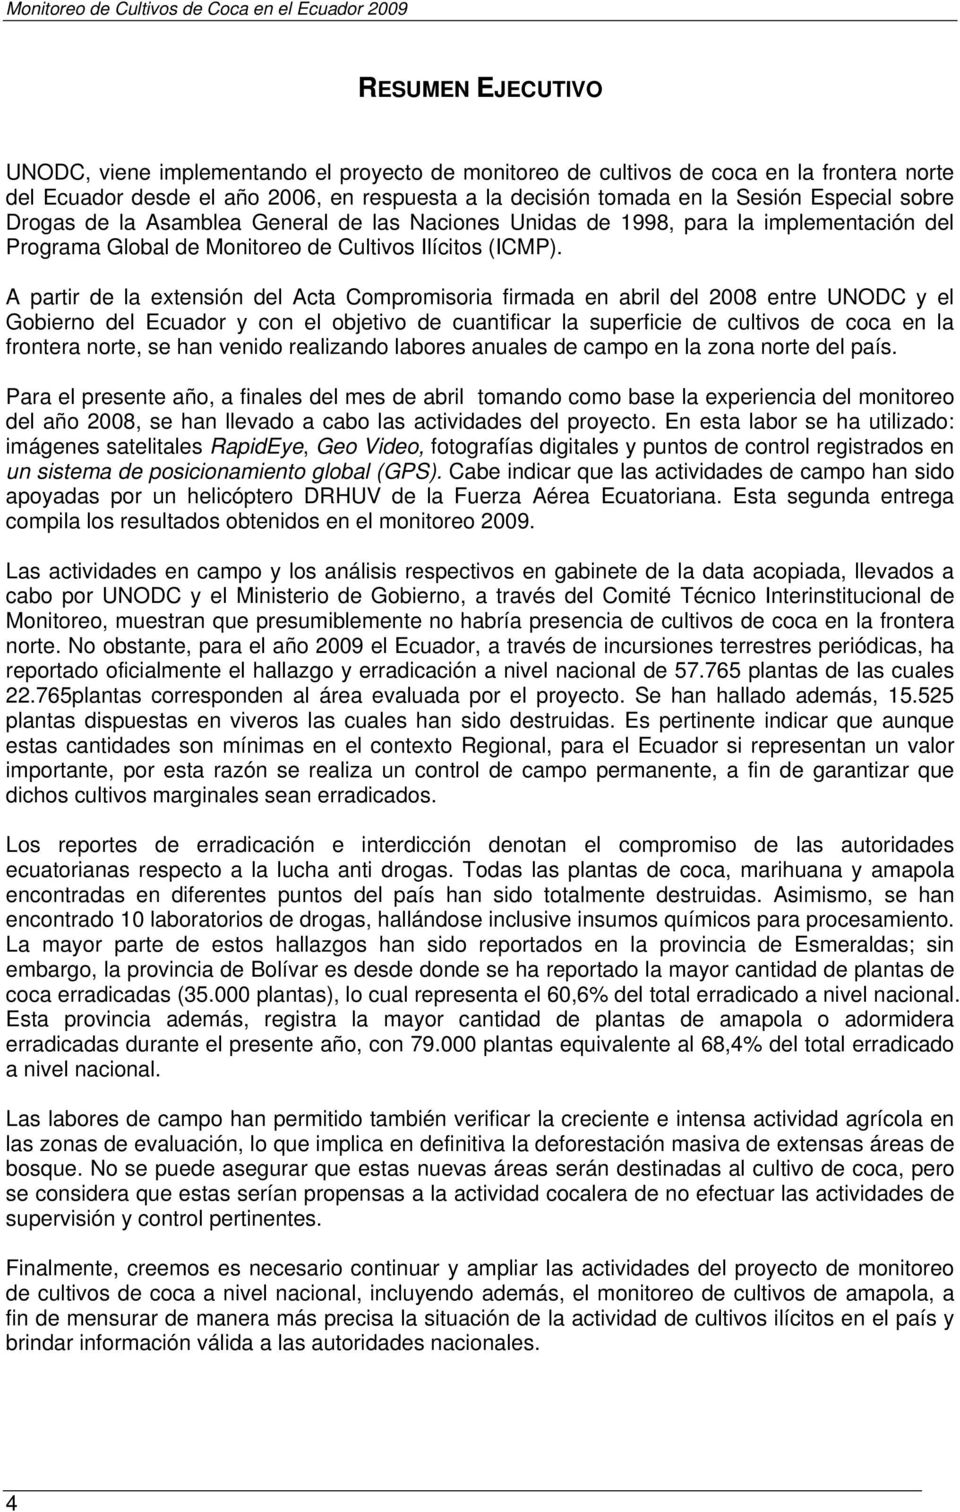 A partir de la extensión del Acta Compromisoria firmada en abril del 2008 entre UNODC y el Gobierno del Ecuador y con el objetivo de cuantificar la superficie de cultivos de coca en la frontera